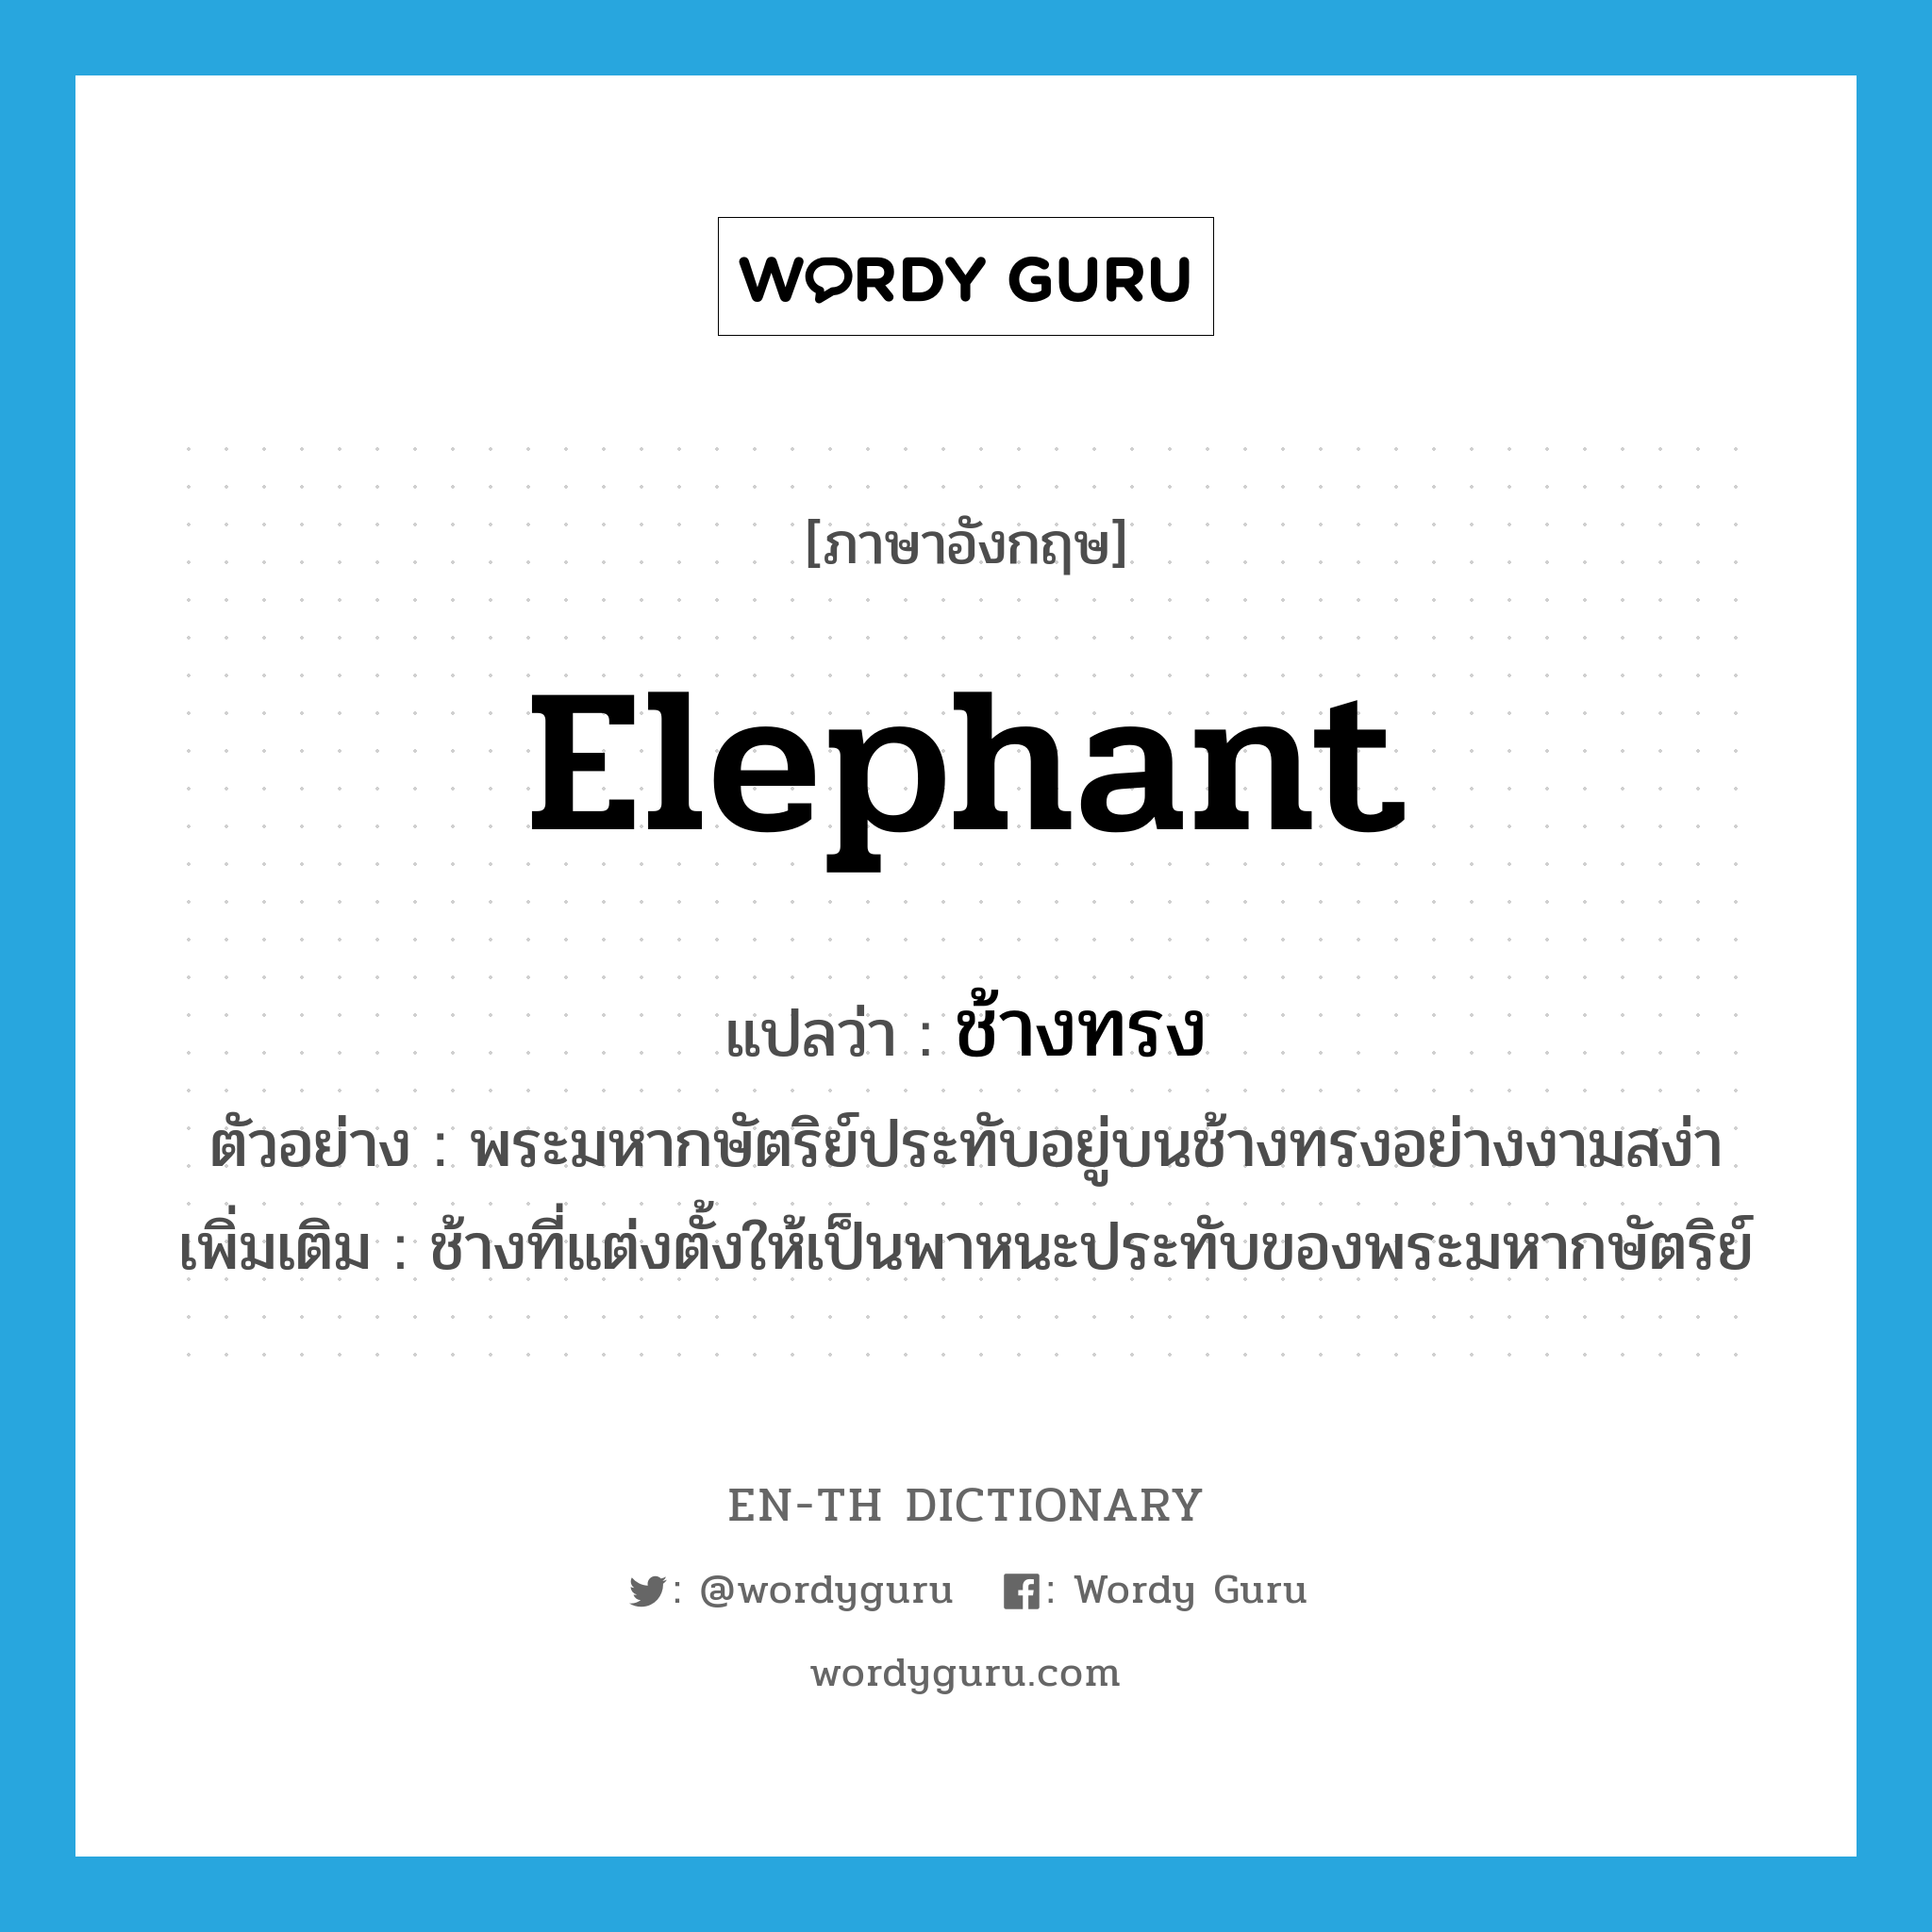 ช้างทรง ภาษาอังกฤษ?, คำศัพท์ภาษาอังกฤษ ช้างทรง แปลว่า elephant ประเภท N ตัวอย่าง พระมหากษัตริย์ประทับอยู่บนช้างทรงอย่างงามสง่า เพิ่มเติม ช้างที่แต่งตั้งให้เป็นพาหนะประทับของพระมหากษัตริย์ หมวด N